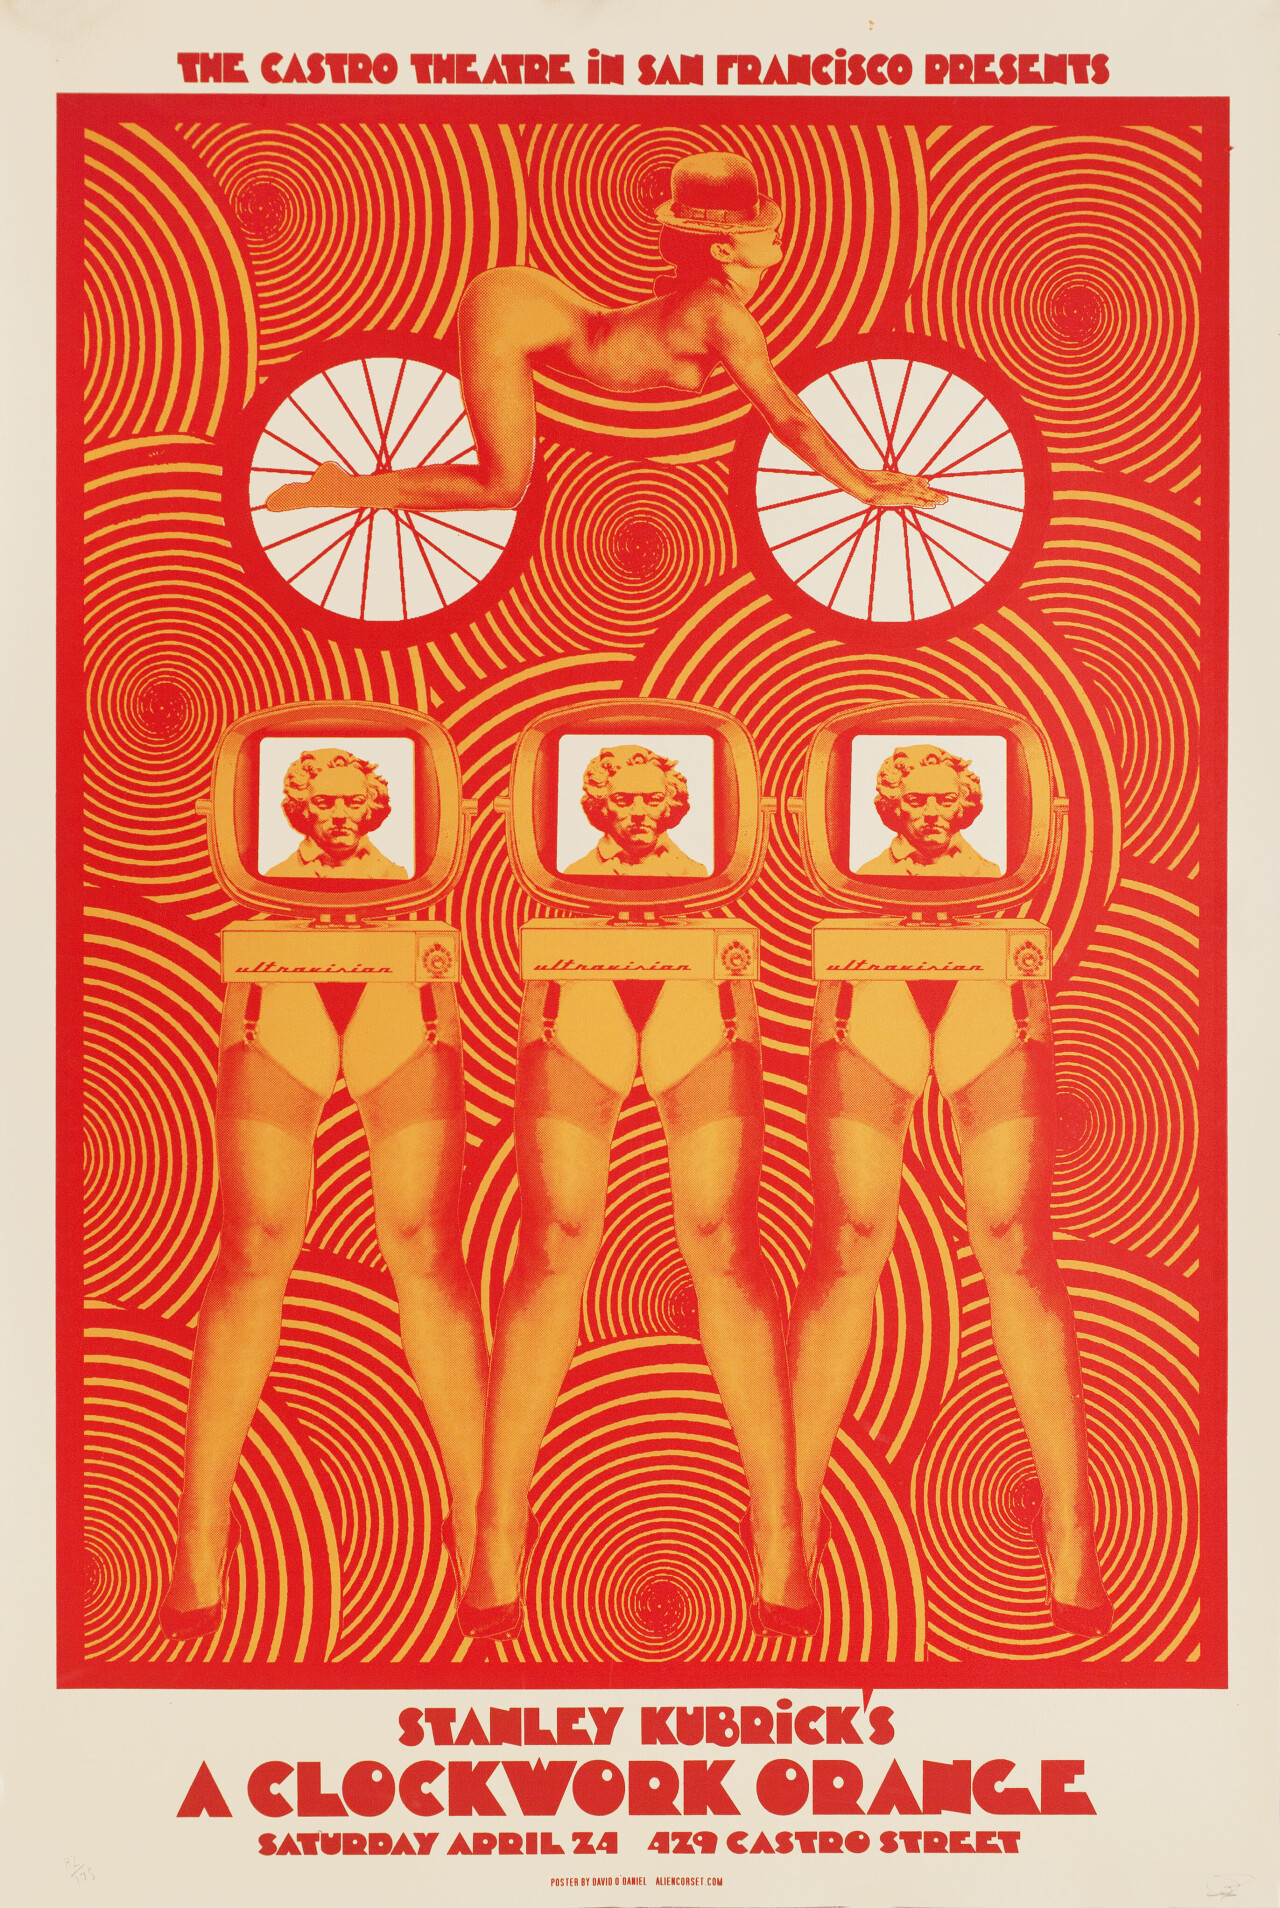 Заводной апельсин (A Clockwork Orange, 1971), режиссёр Стэнли Кубрик, американский постер к фильму, автор Дэвид О’Дэниел (графический дизайн, 2010 год)